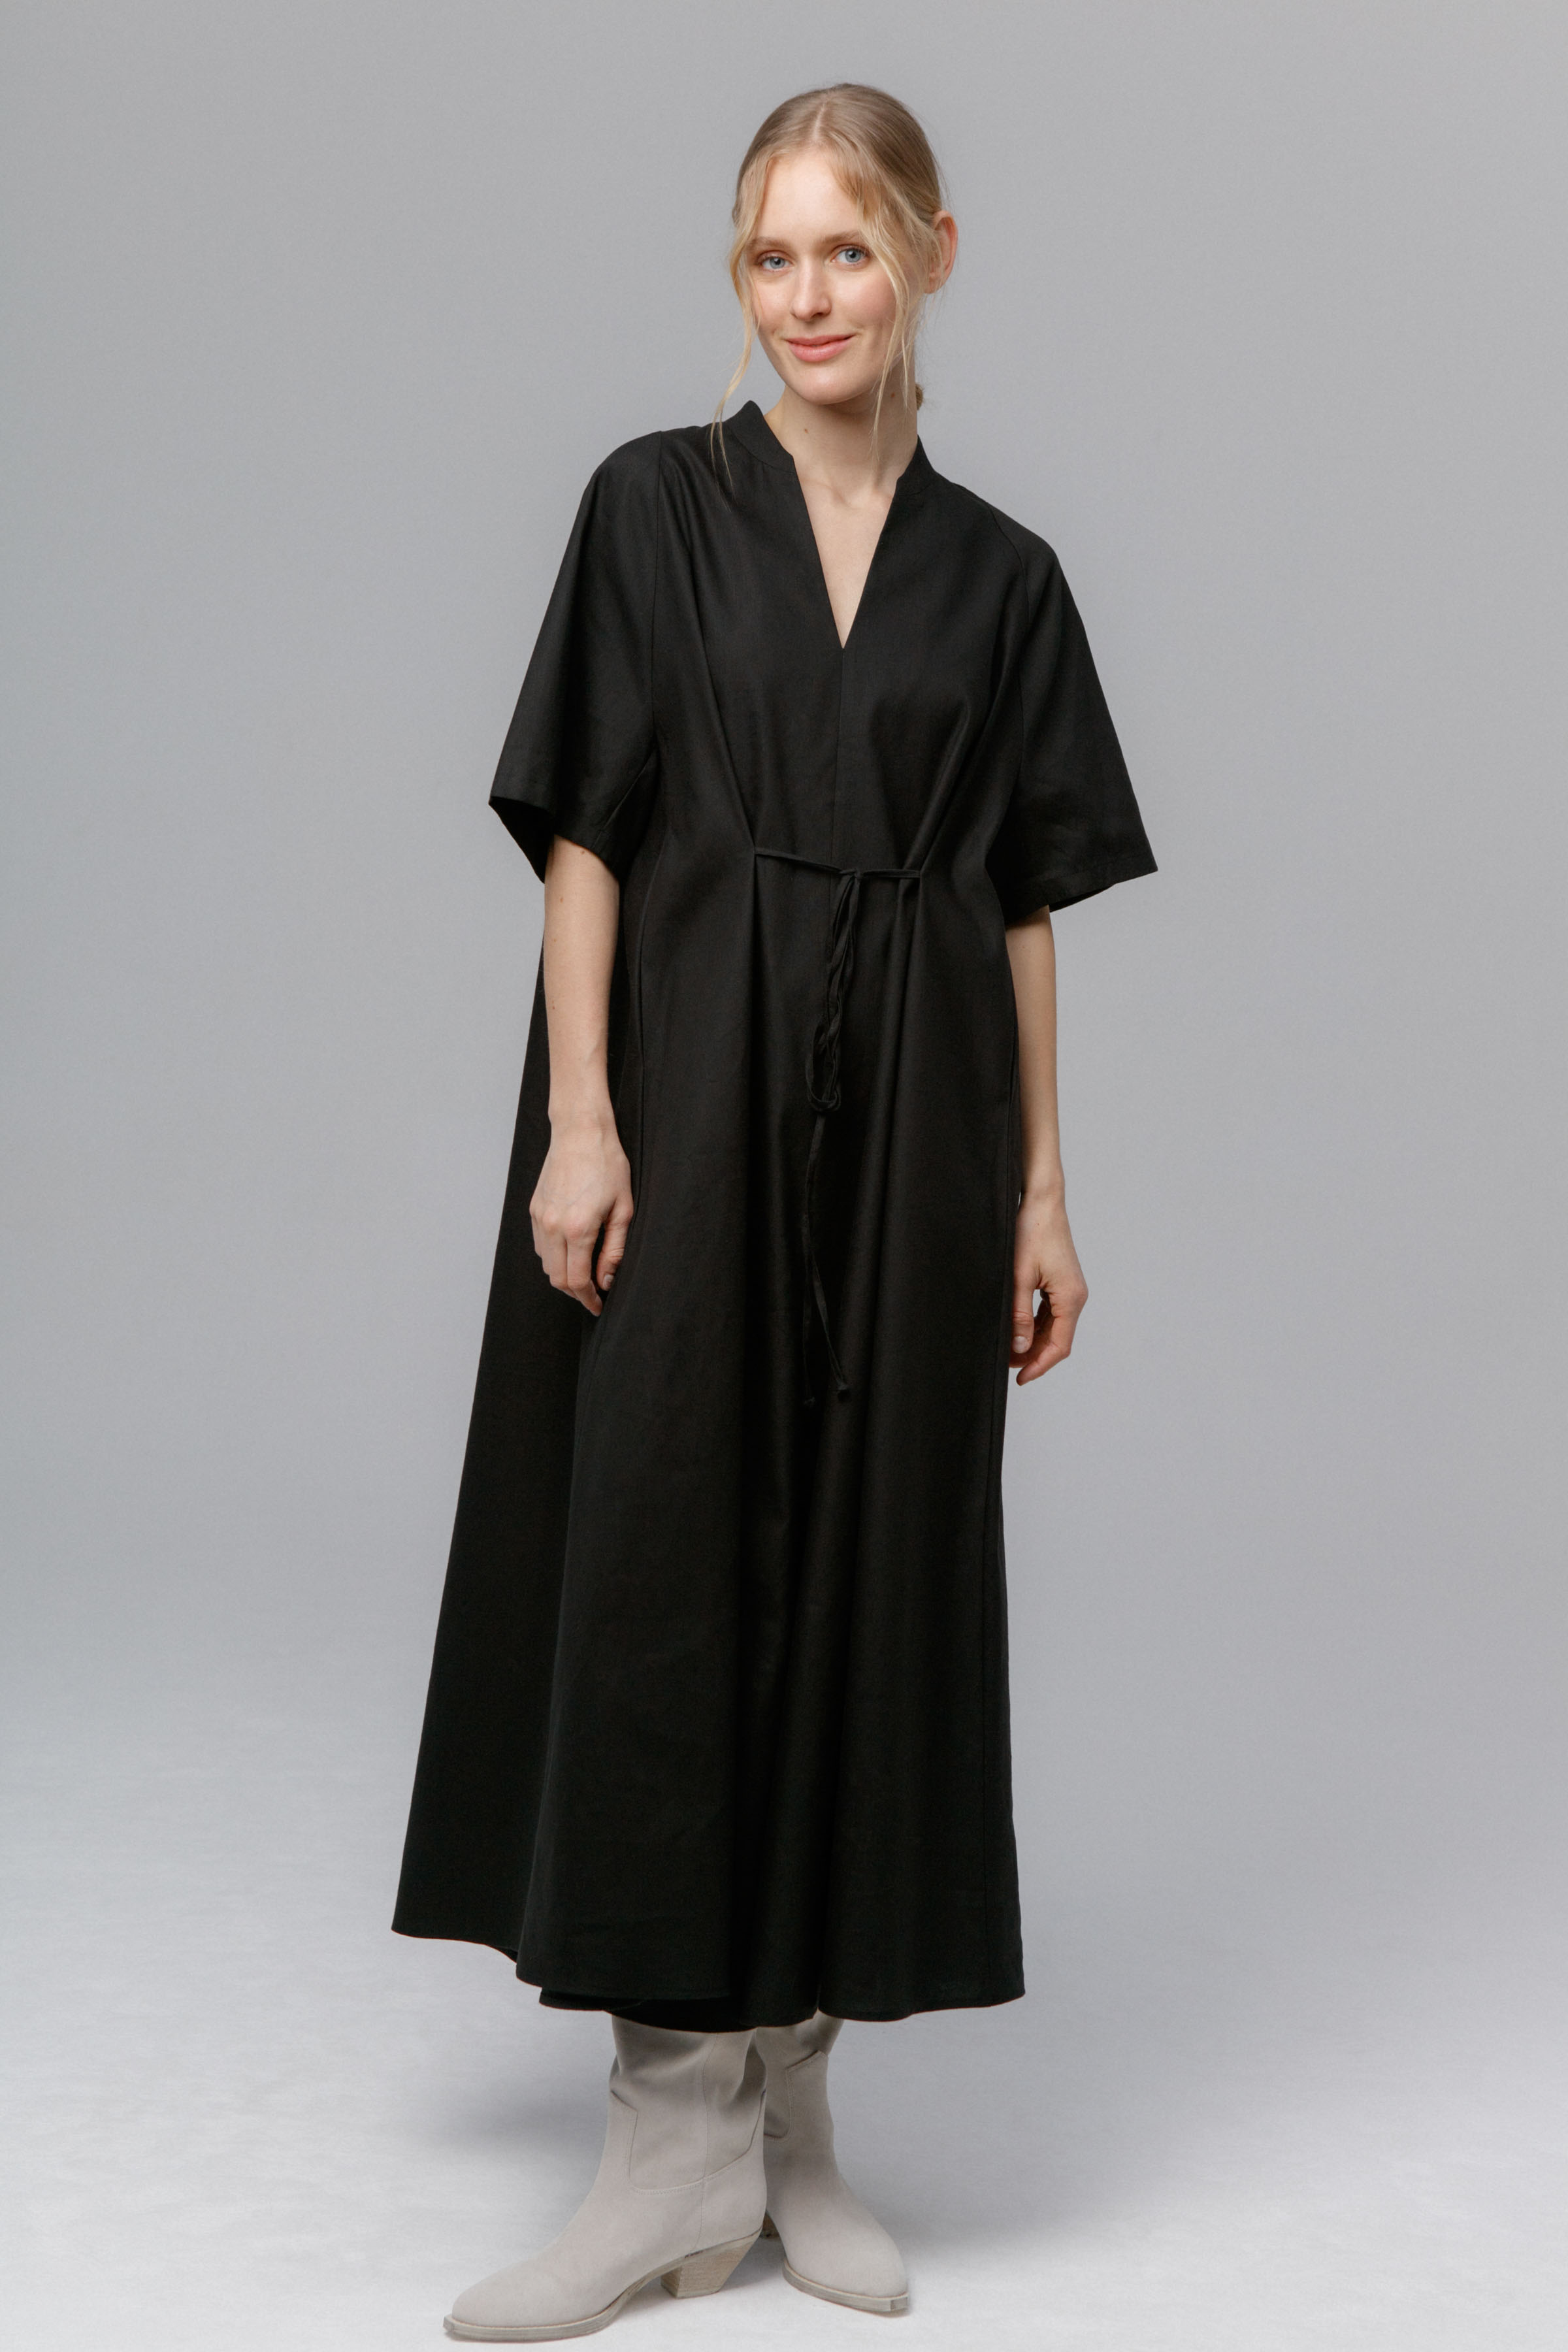 Платье Реглан, завязки, лён 00 Черный (noir) от Lesel (Лесель)! Заказывайте по ✆ 8 (800) 777 02 37